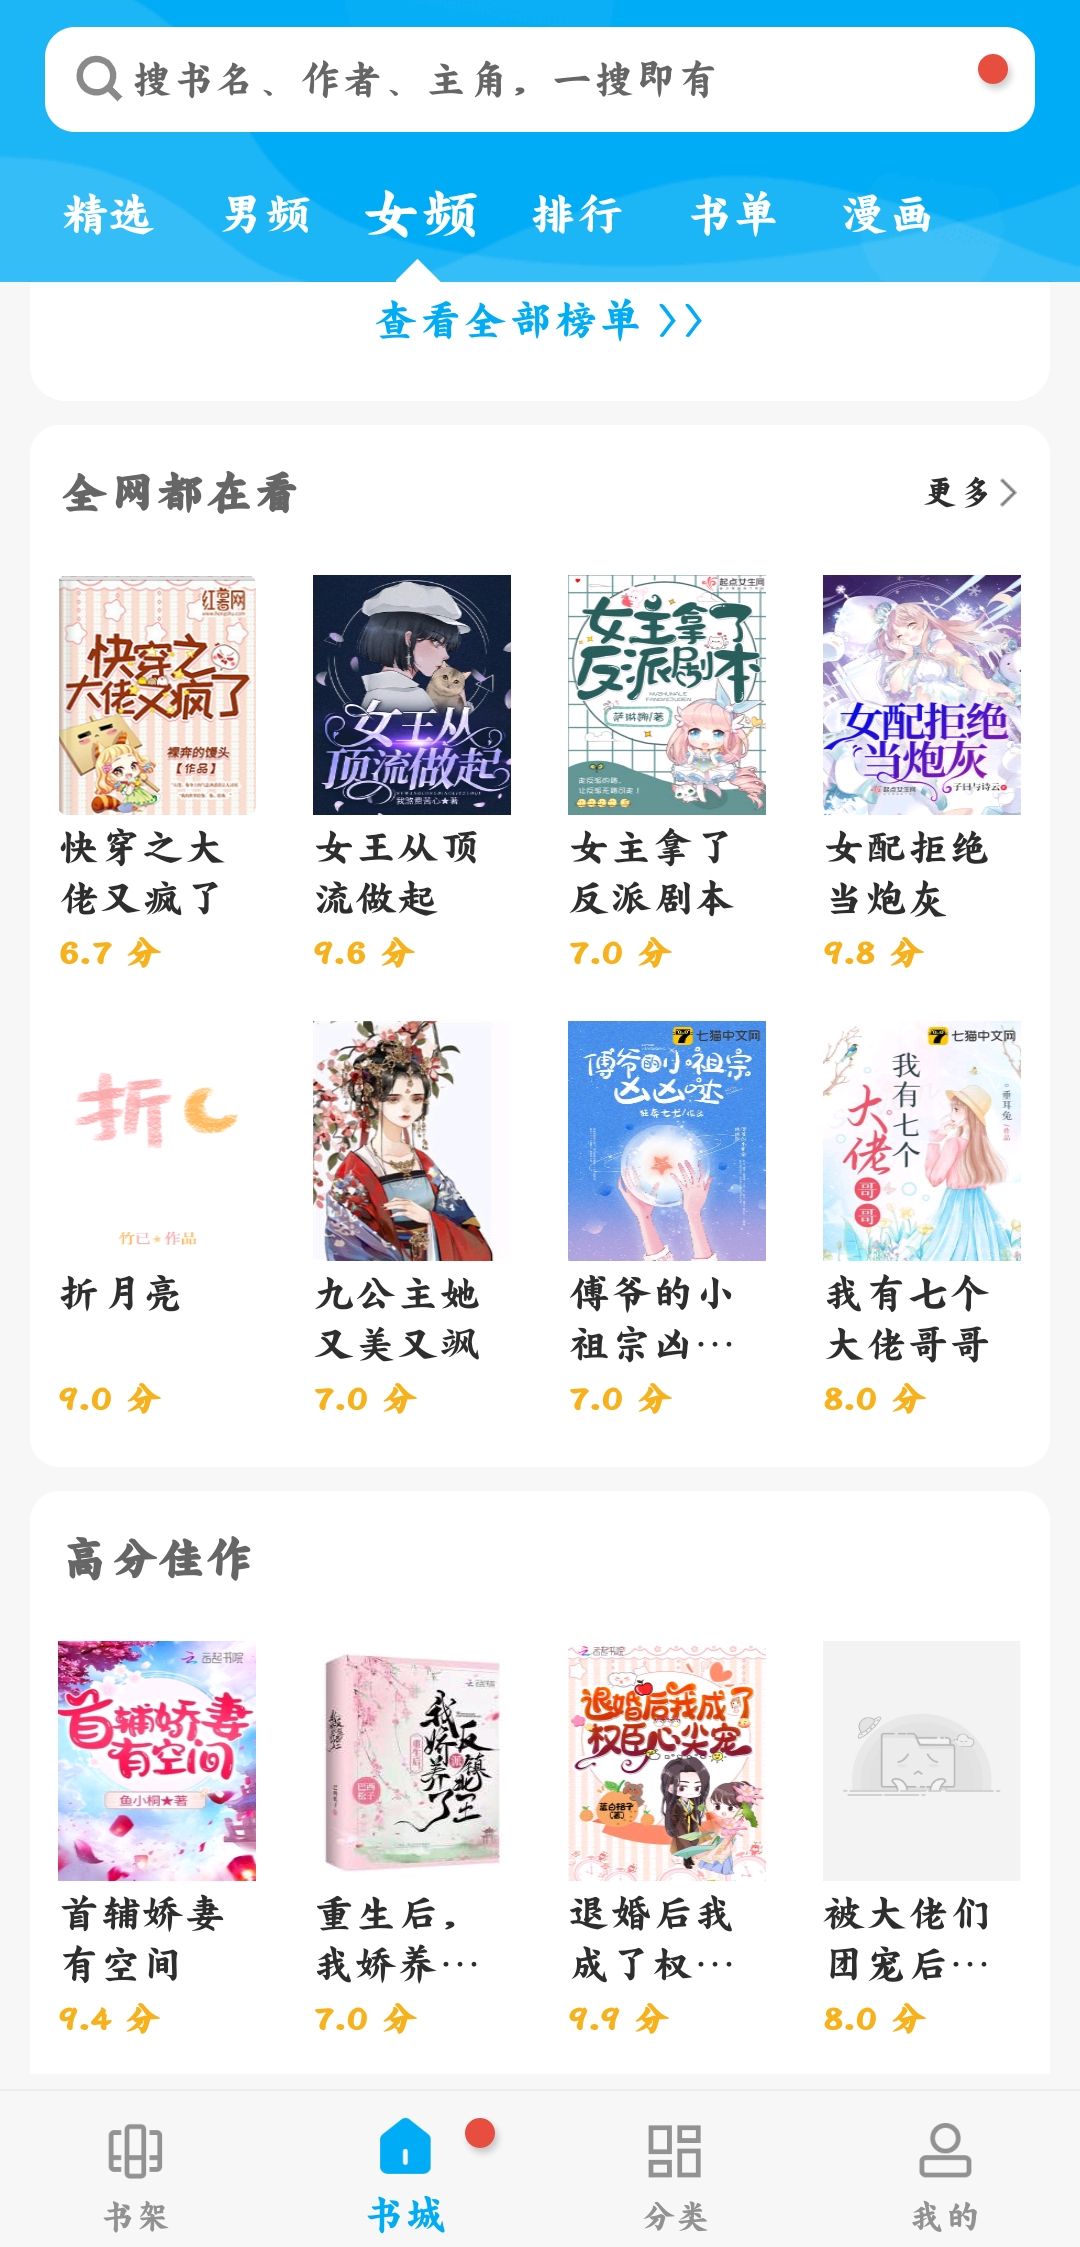 海棠文学城app官网版第0张截图